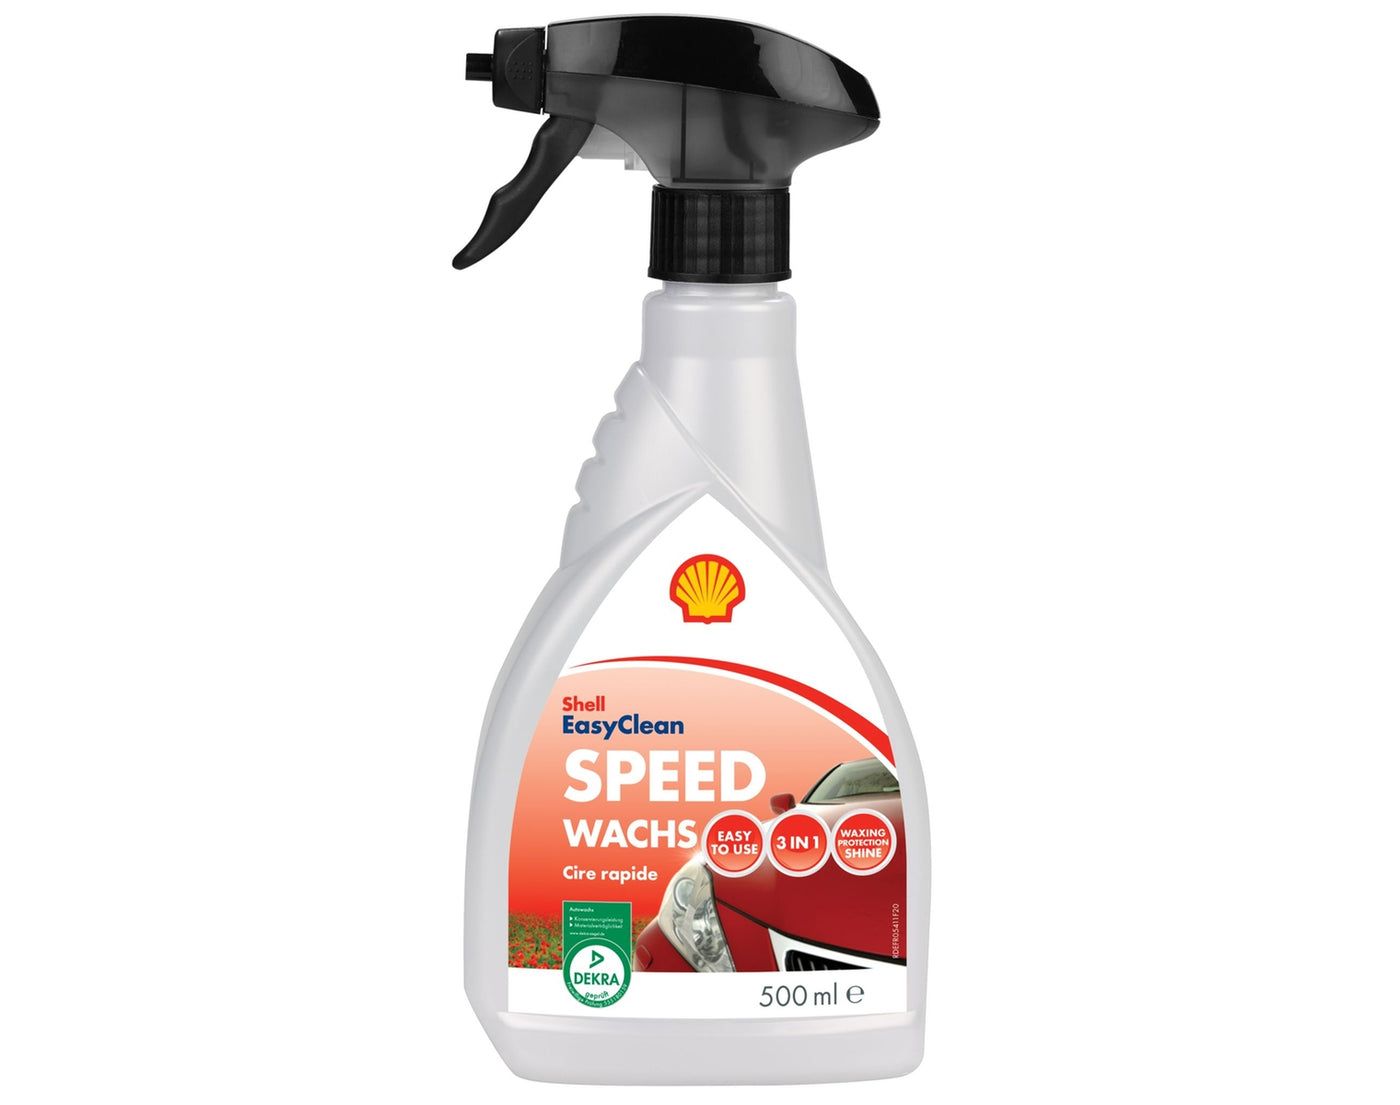 Shell - Speed Wachs 500 ml - Garage/Velos-Motos Allemann